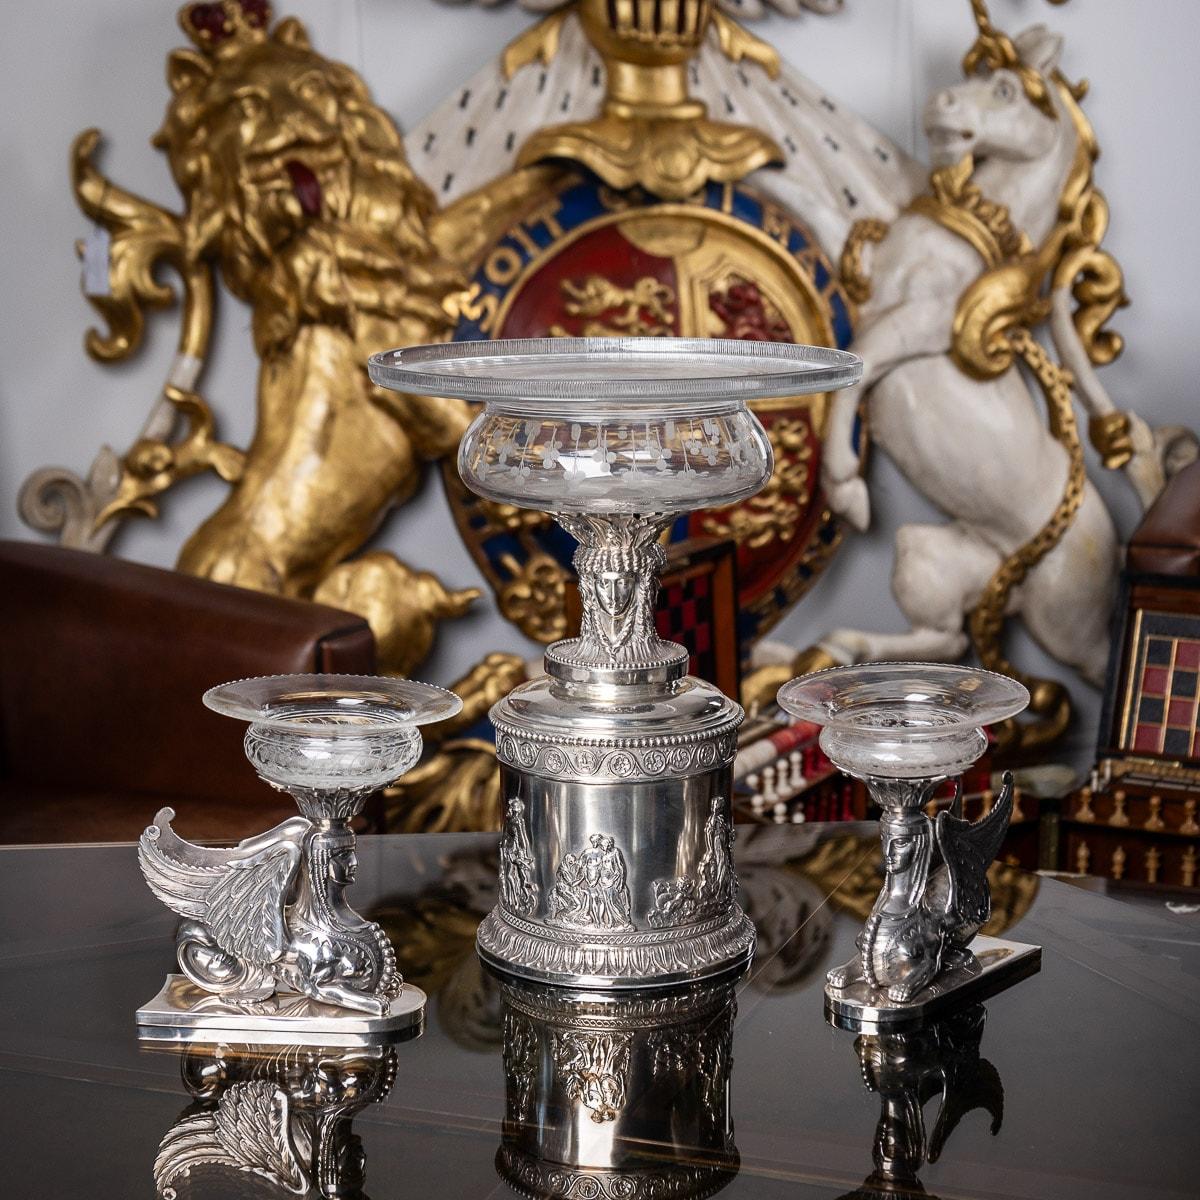 Antikes 19. Jahrhundert, seltene und prächtige dreiteilige viktorianische Tischgarnitur aus massivem Silber, das zylindrische Mittelstück ist mit einem gegossenen neoklassizistischen Fries versehen, der mythologische Figuren darstellt und von einer